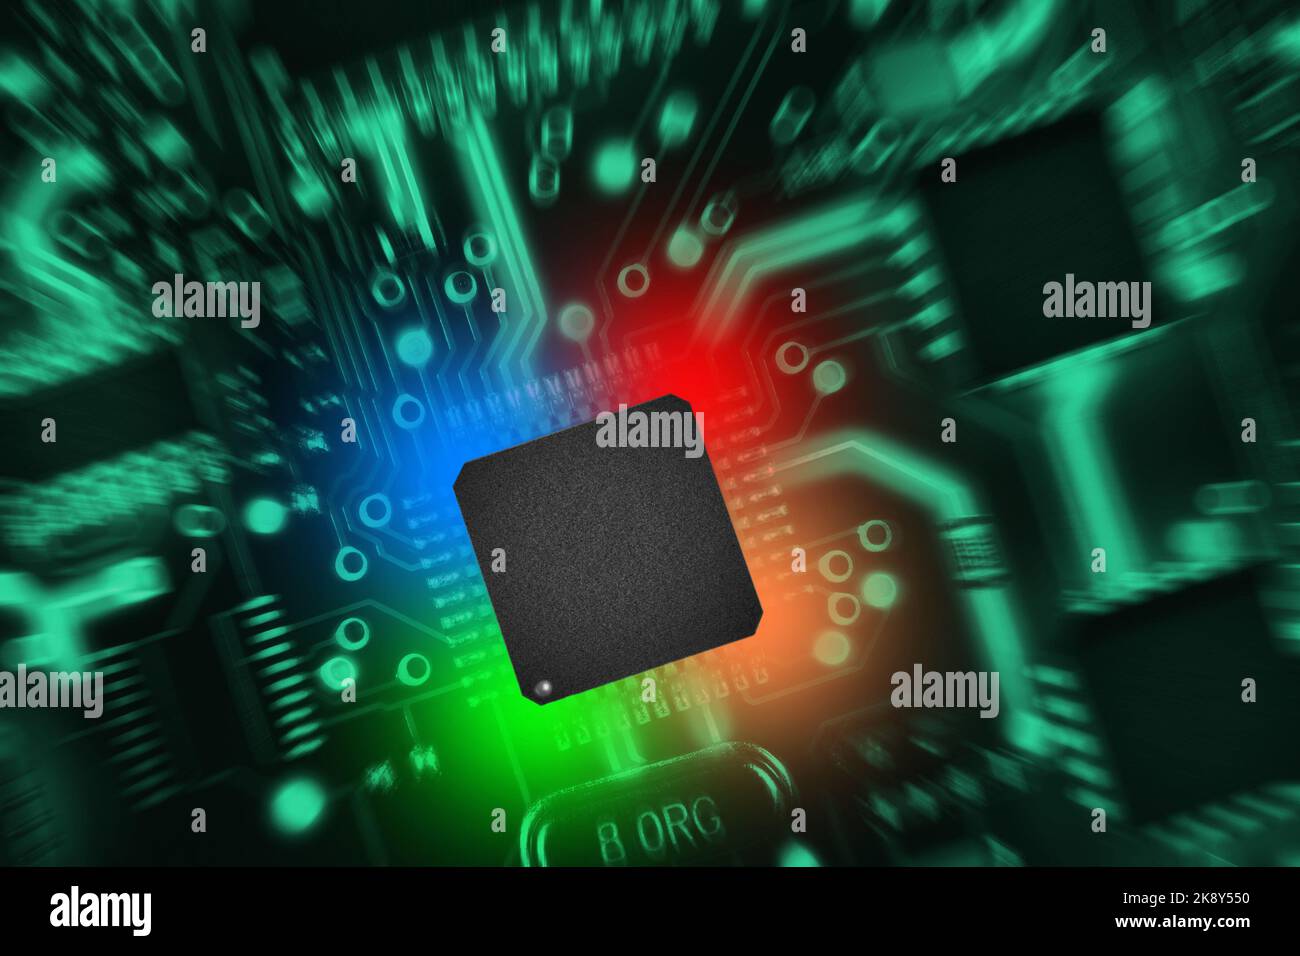 Platine mit Komponenten in grünen Farbtönen. Abstract high tech Hintergrund. Zoom Effekt. Stockfoto